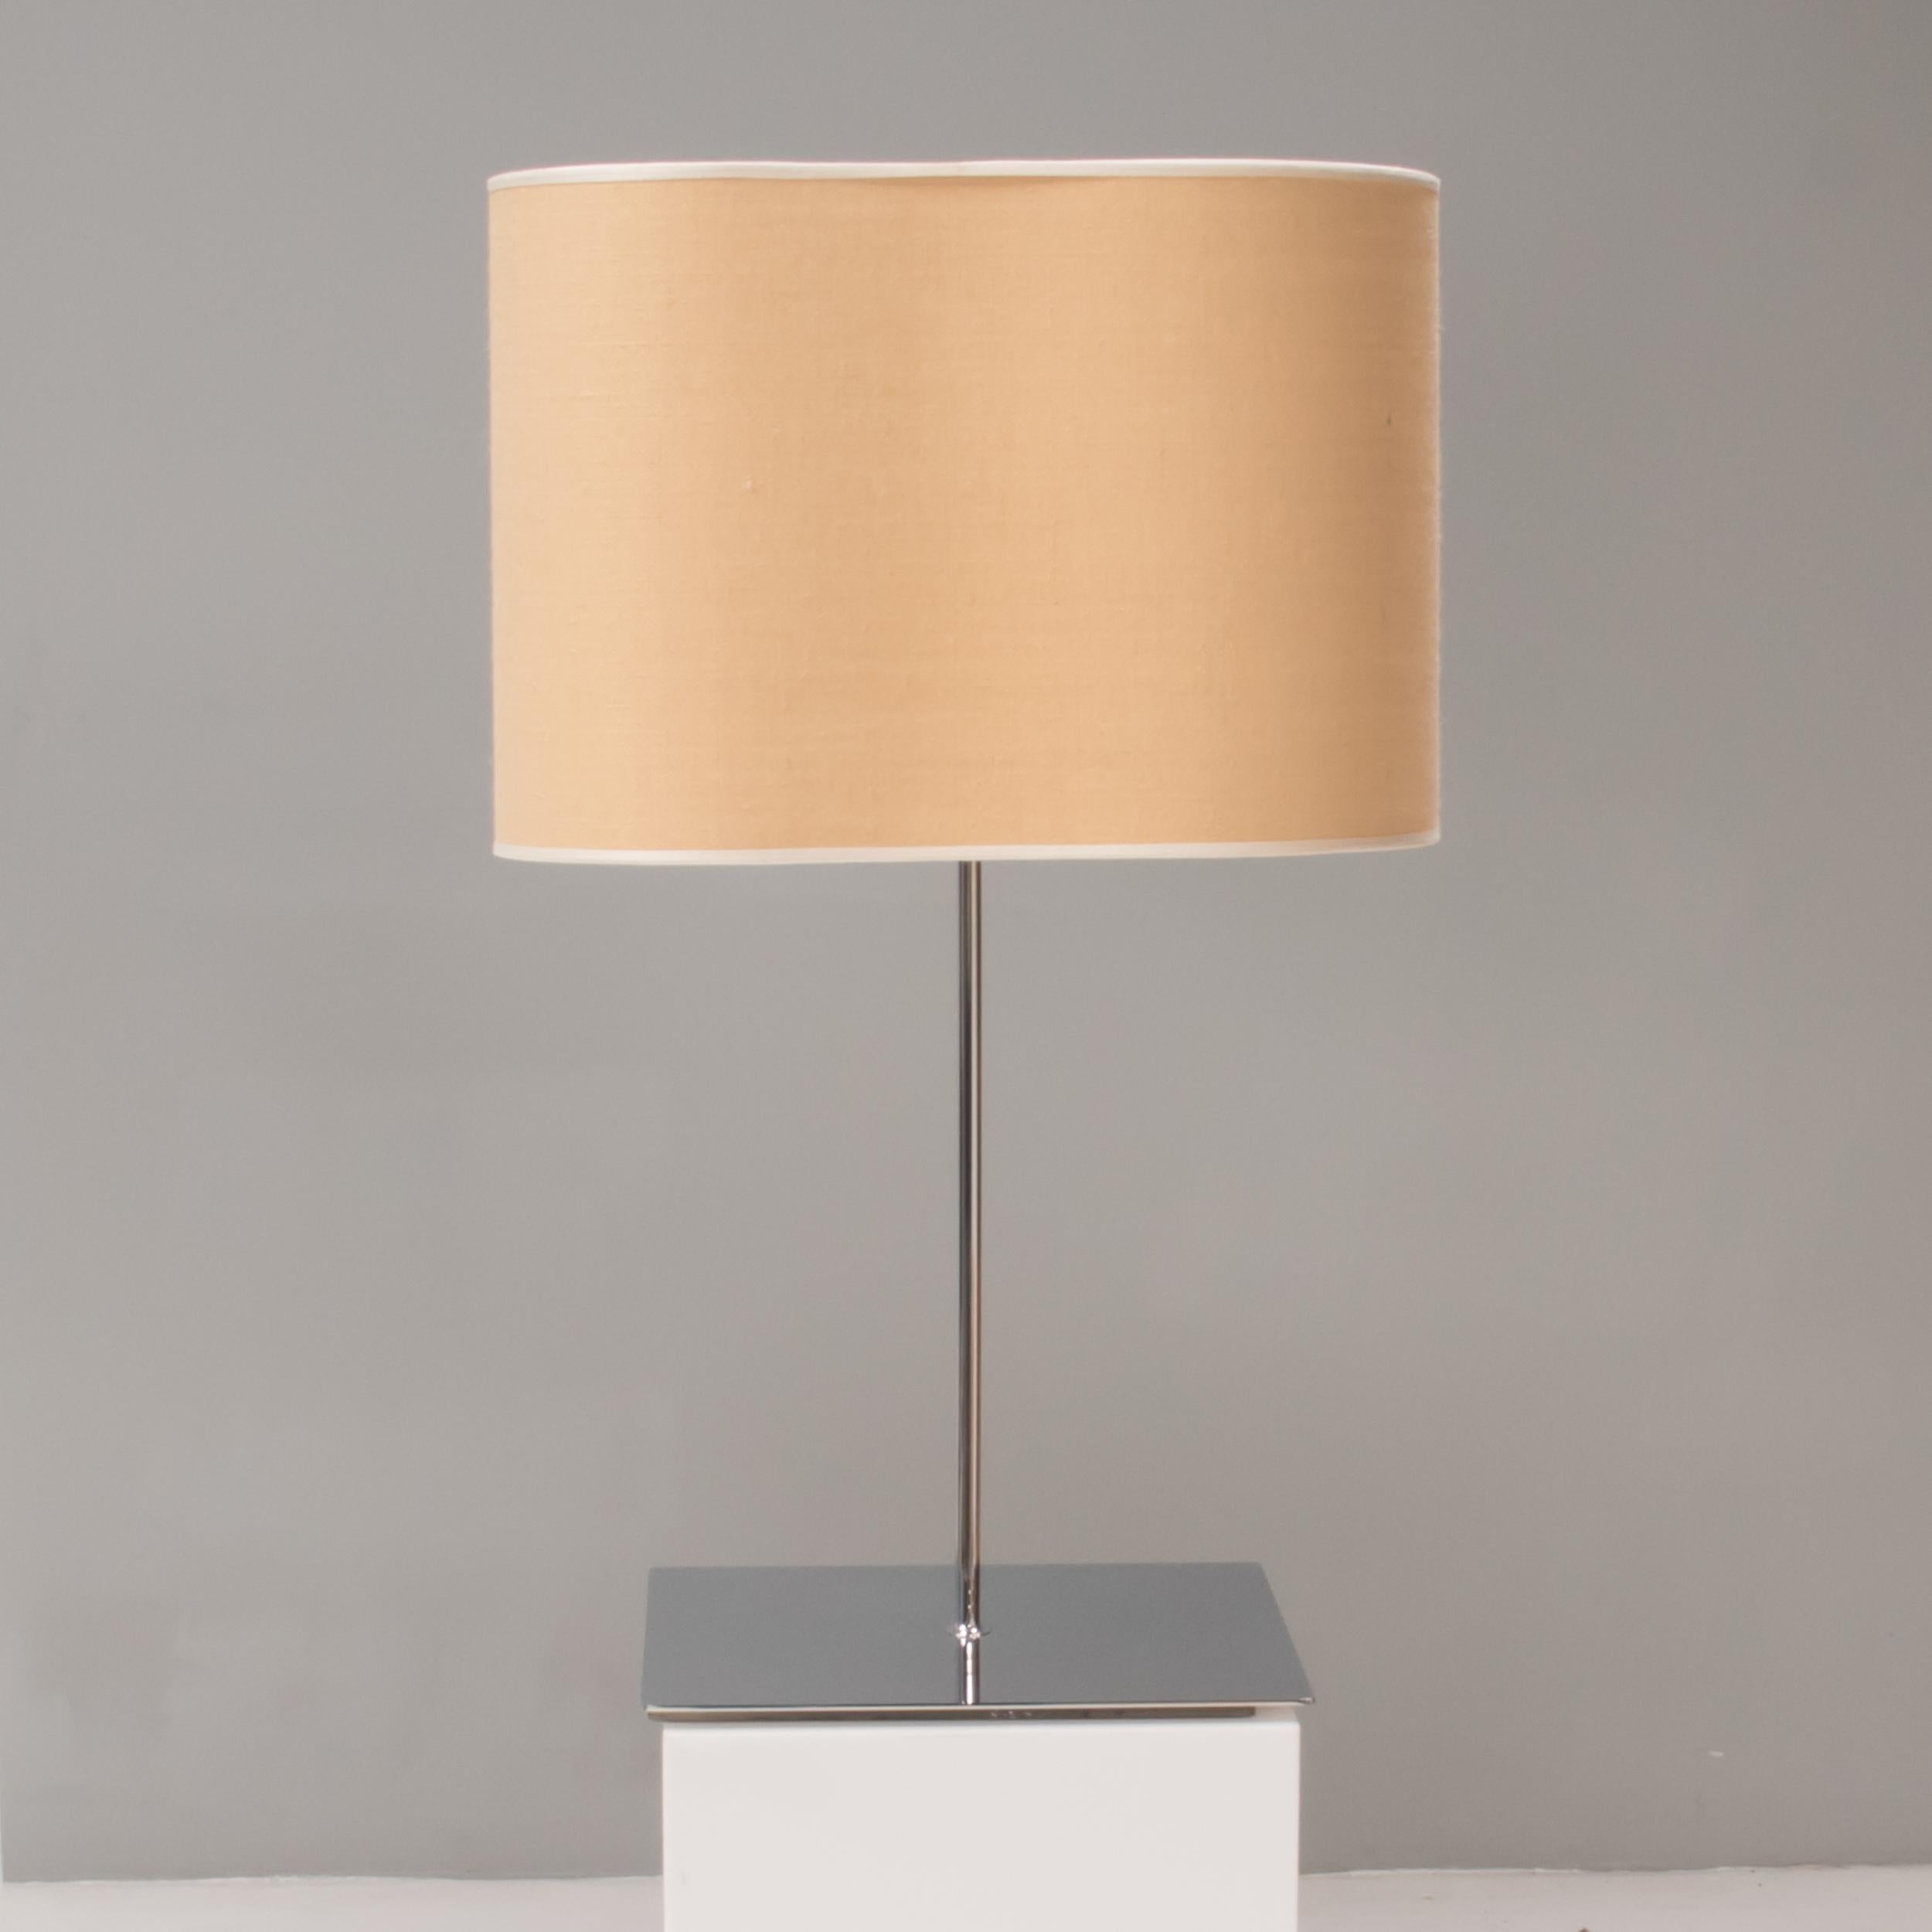 Conçue par Enrico Franzoloni pour Karboxx, la lampe de table Peggy est un fantastique exemple de design moderne.

Avec une base carrée en métal chromé et un pied tubulaire, les lampes de table sont dotées d'abat-jours en toile de jute naturelle à la